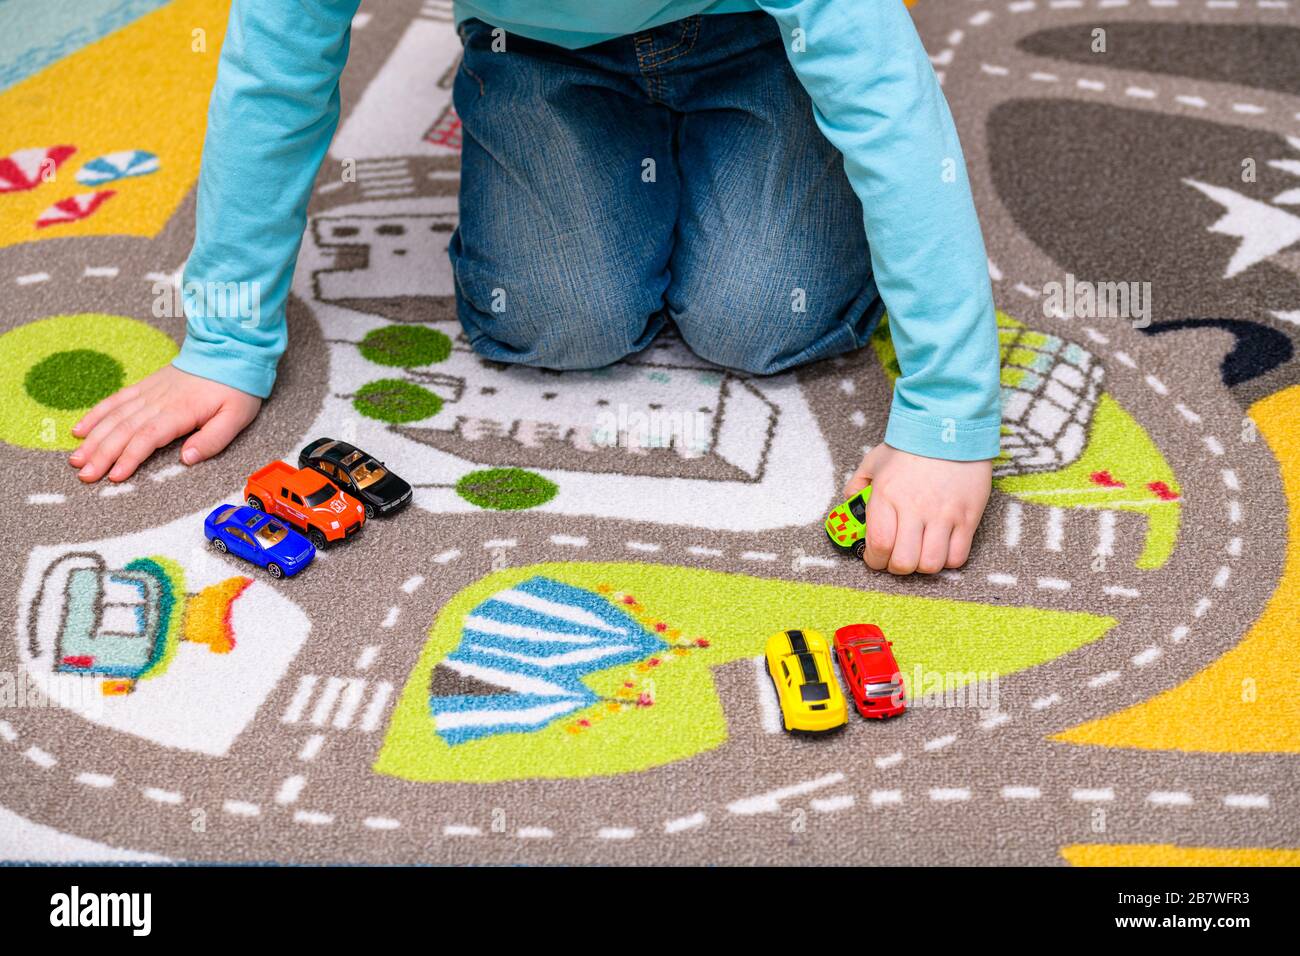 Ragazzo di cinque anni che gioca e allineano le auto giocattolo su un tappetino da gioco con le strade. Il ragazzo è vestito di jeans blu e tiene un'ambulanza. Foto Stock